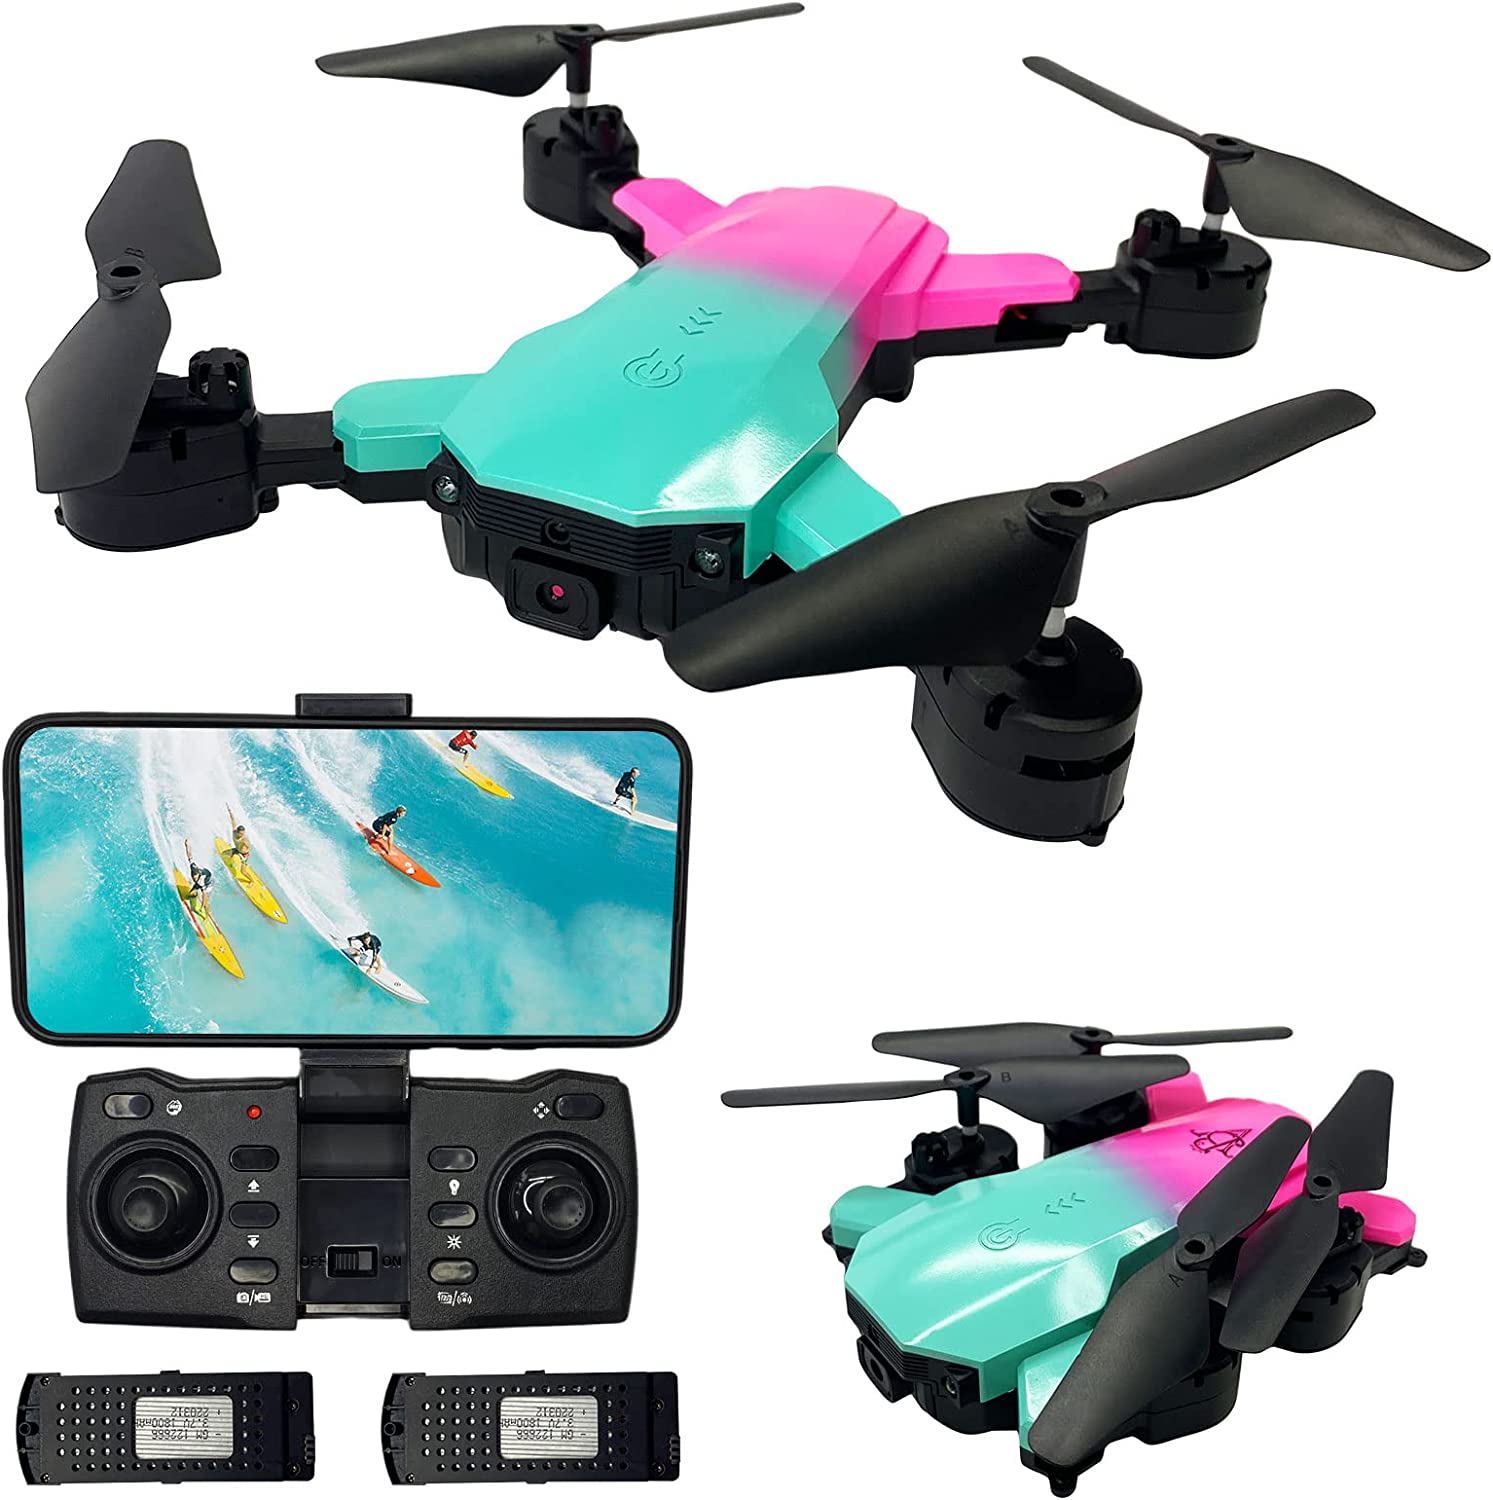 UJV 27MAX Drone RC Dobrável com Câmera Dupla 2K FPV Brinquedo Quadcopter 2 Baterias para Crianças Iniciantes,Modo Sem Cabeça,